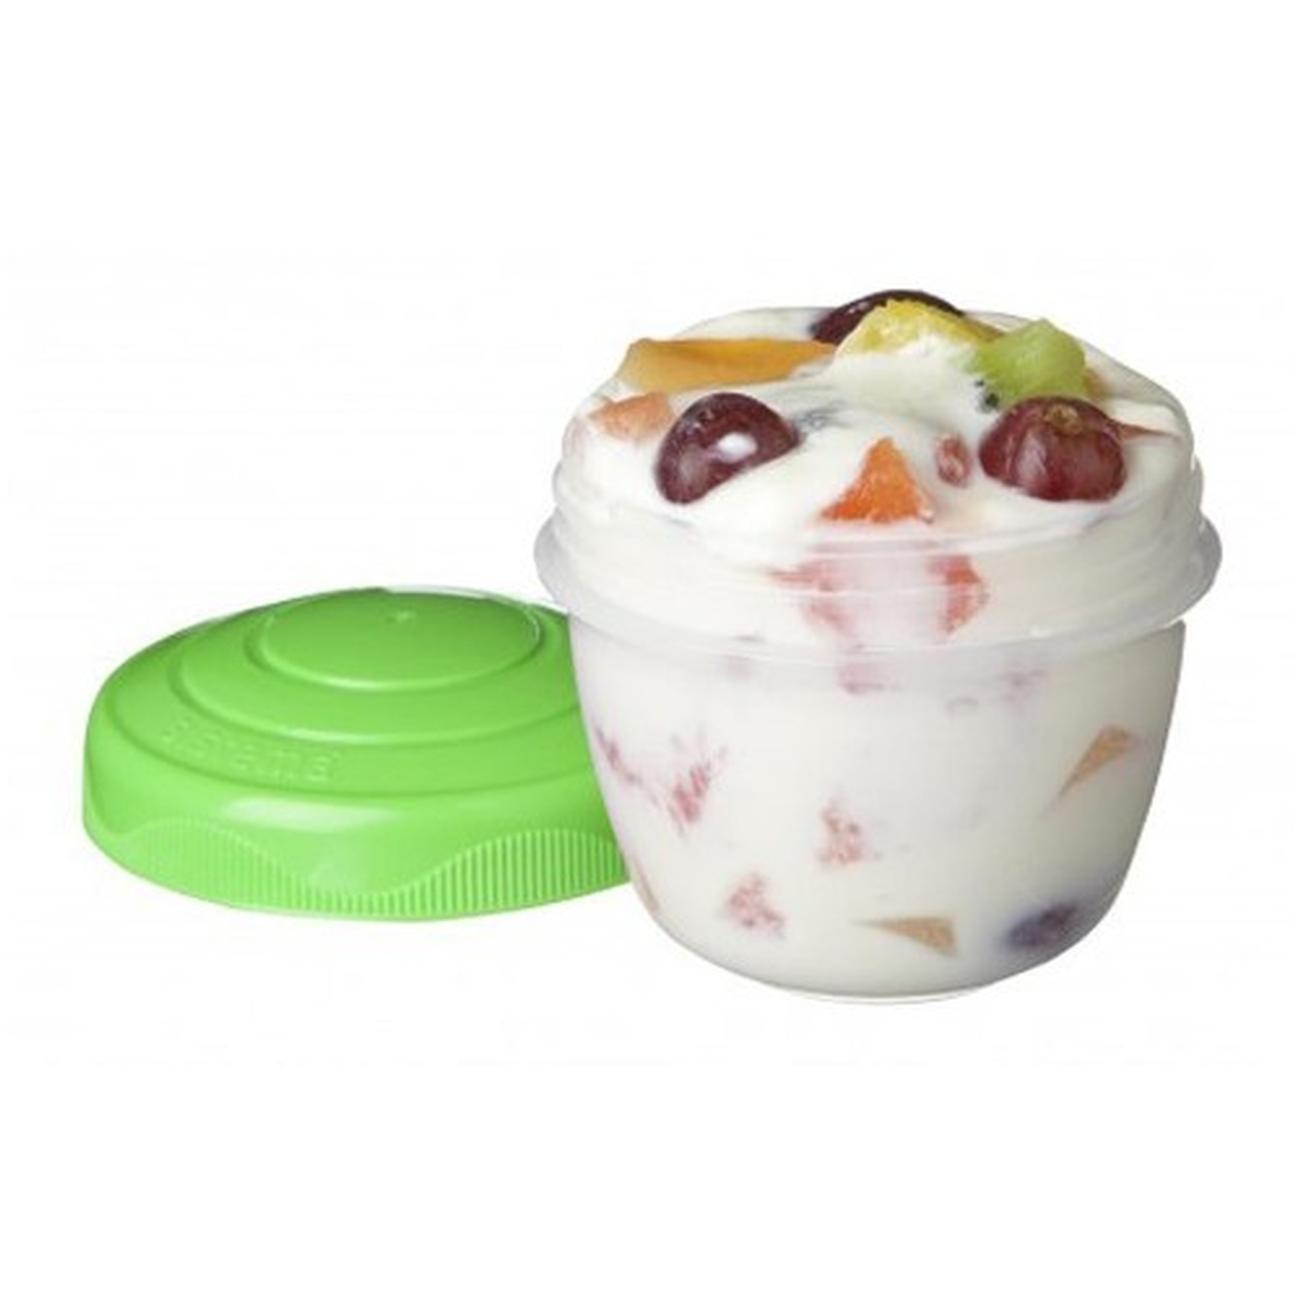 sistema-yogurt-max-to-go-305ml - Sistema Yogurt Max to Go 305ml